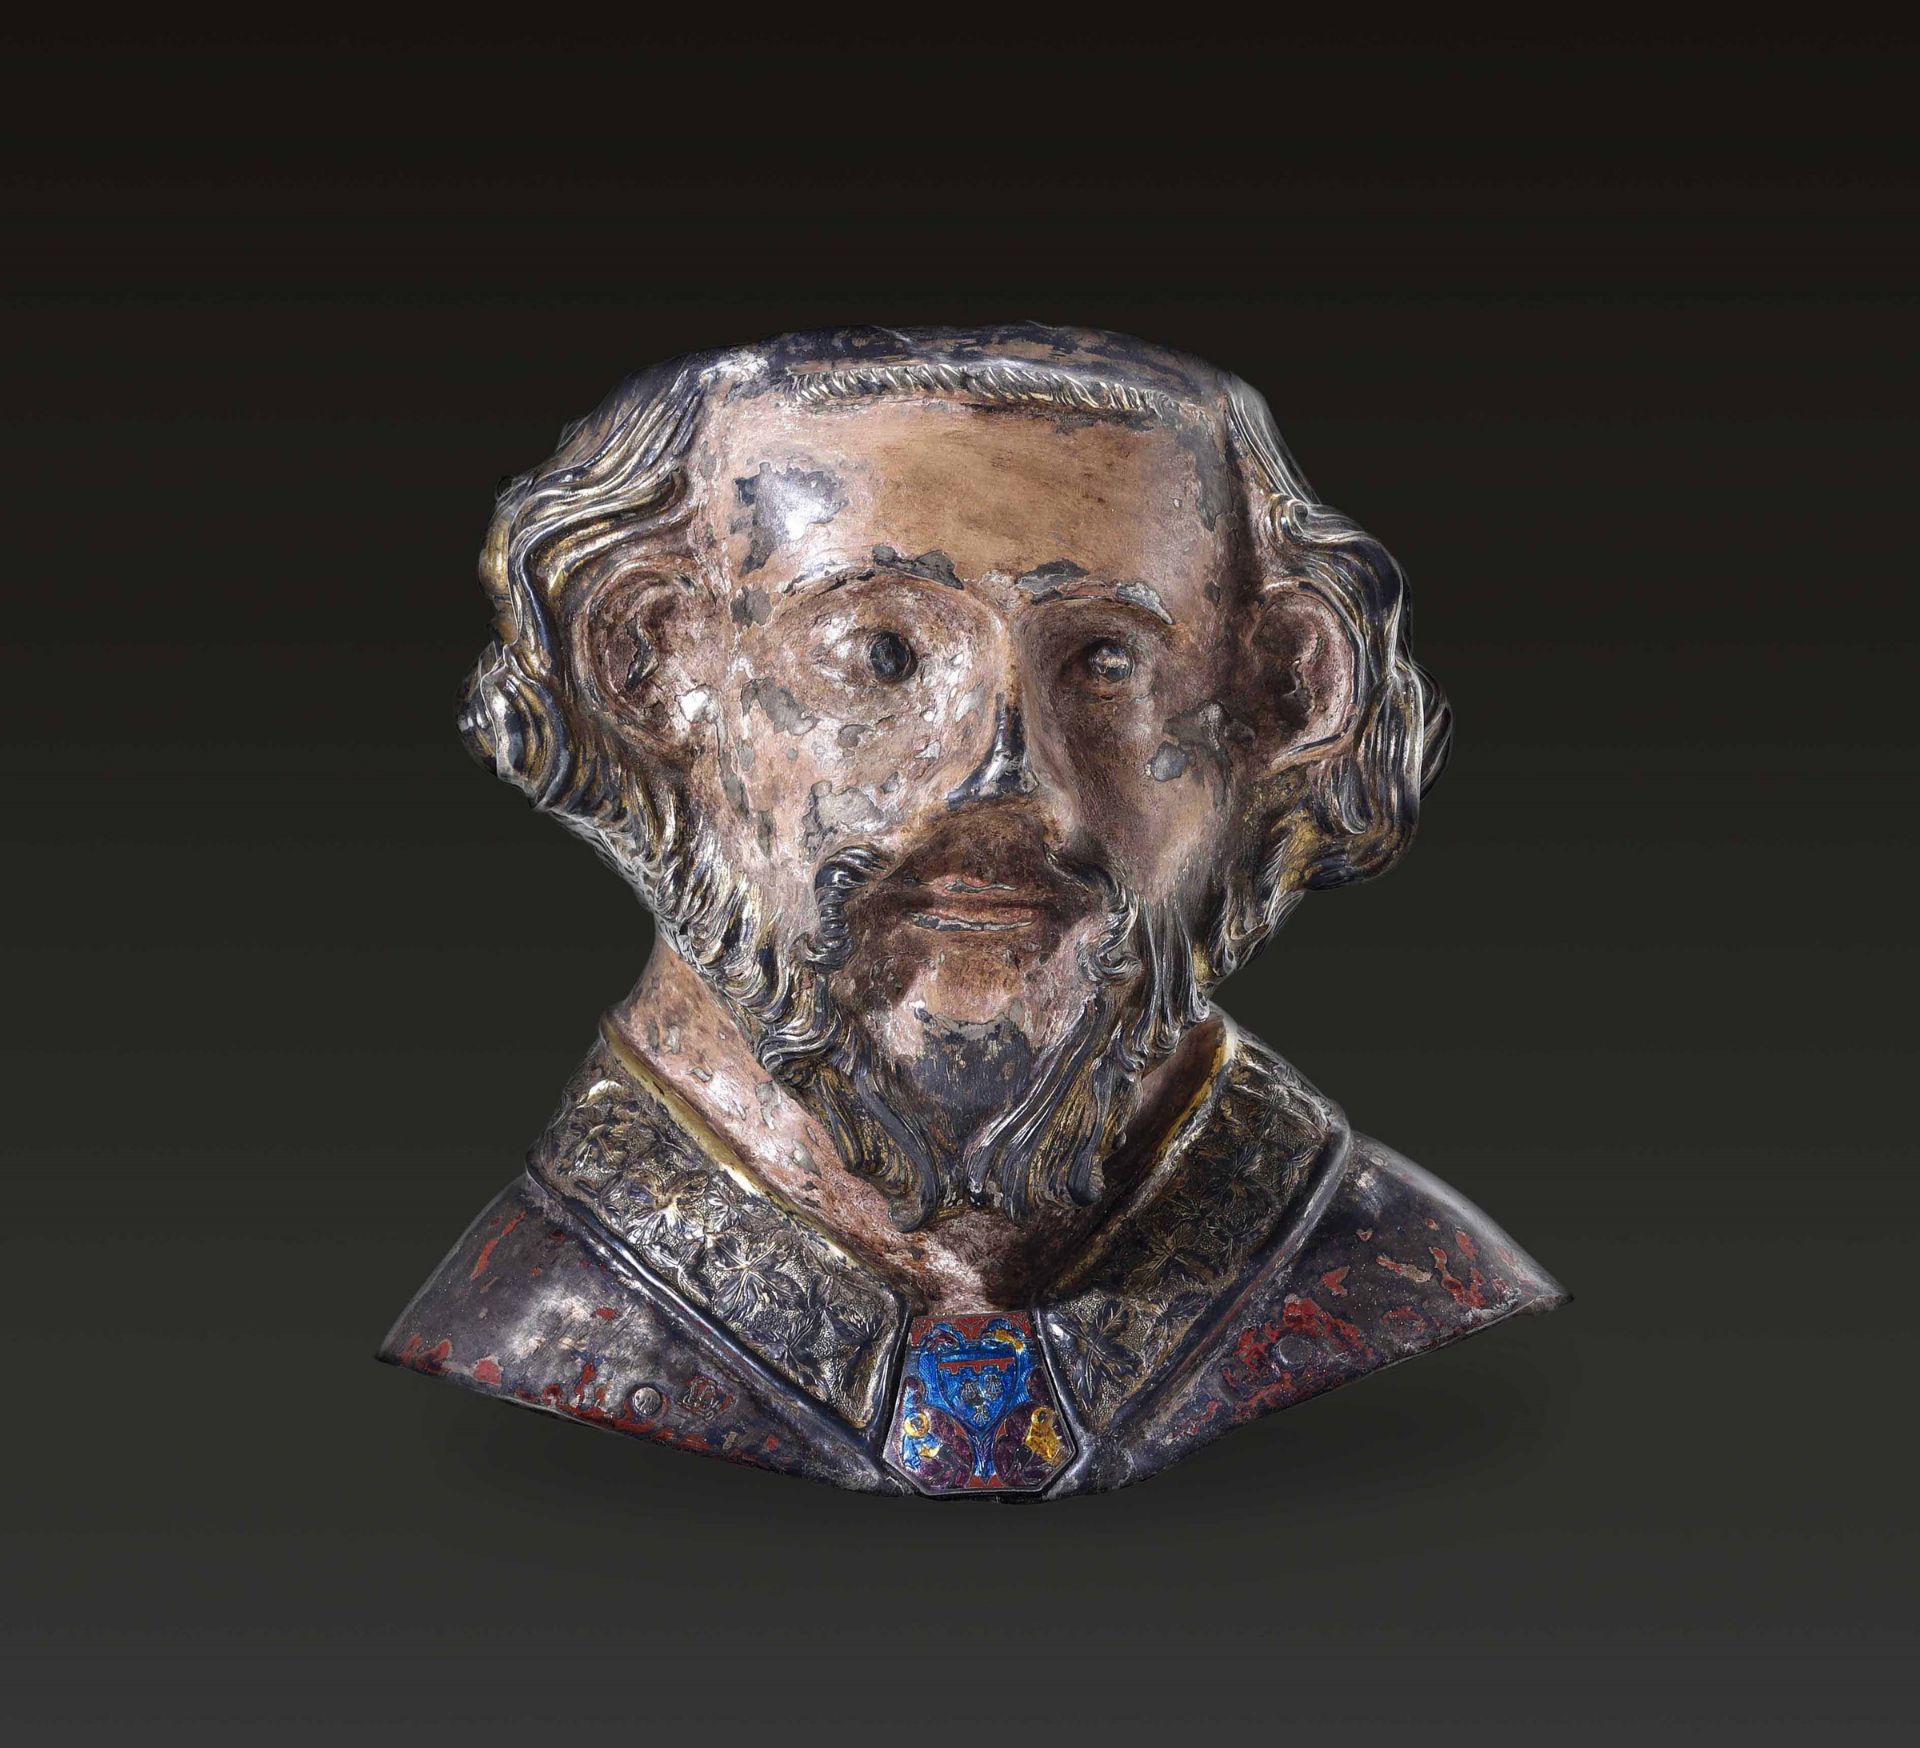 A silver Saint, Catalonia or France, 13-1400s - cm 23x14x24. La rara testimonianza di [...]